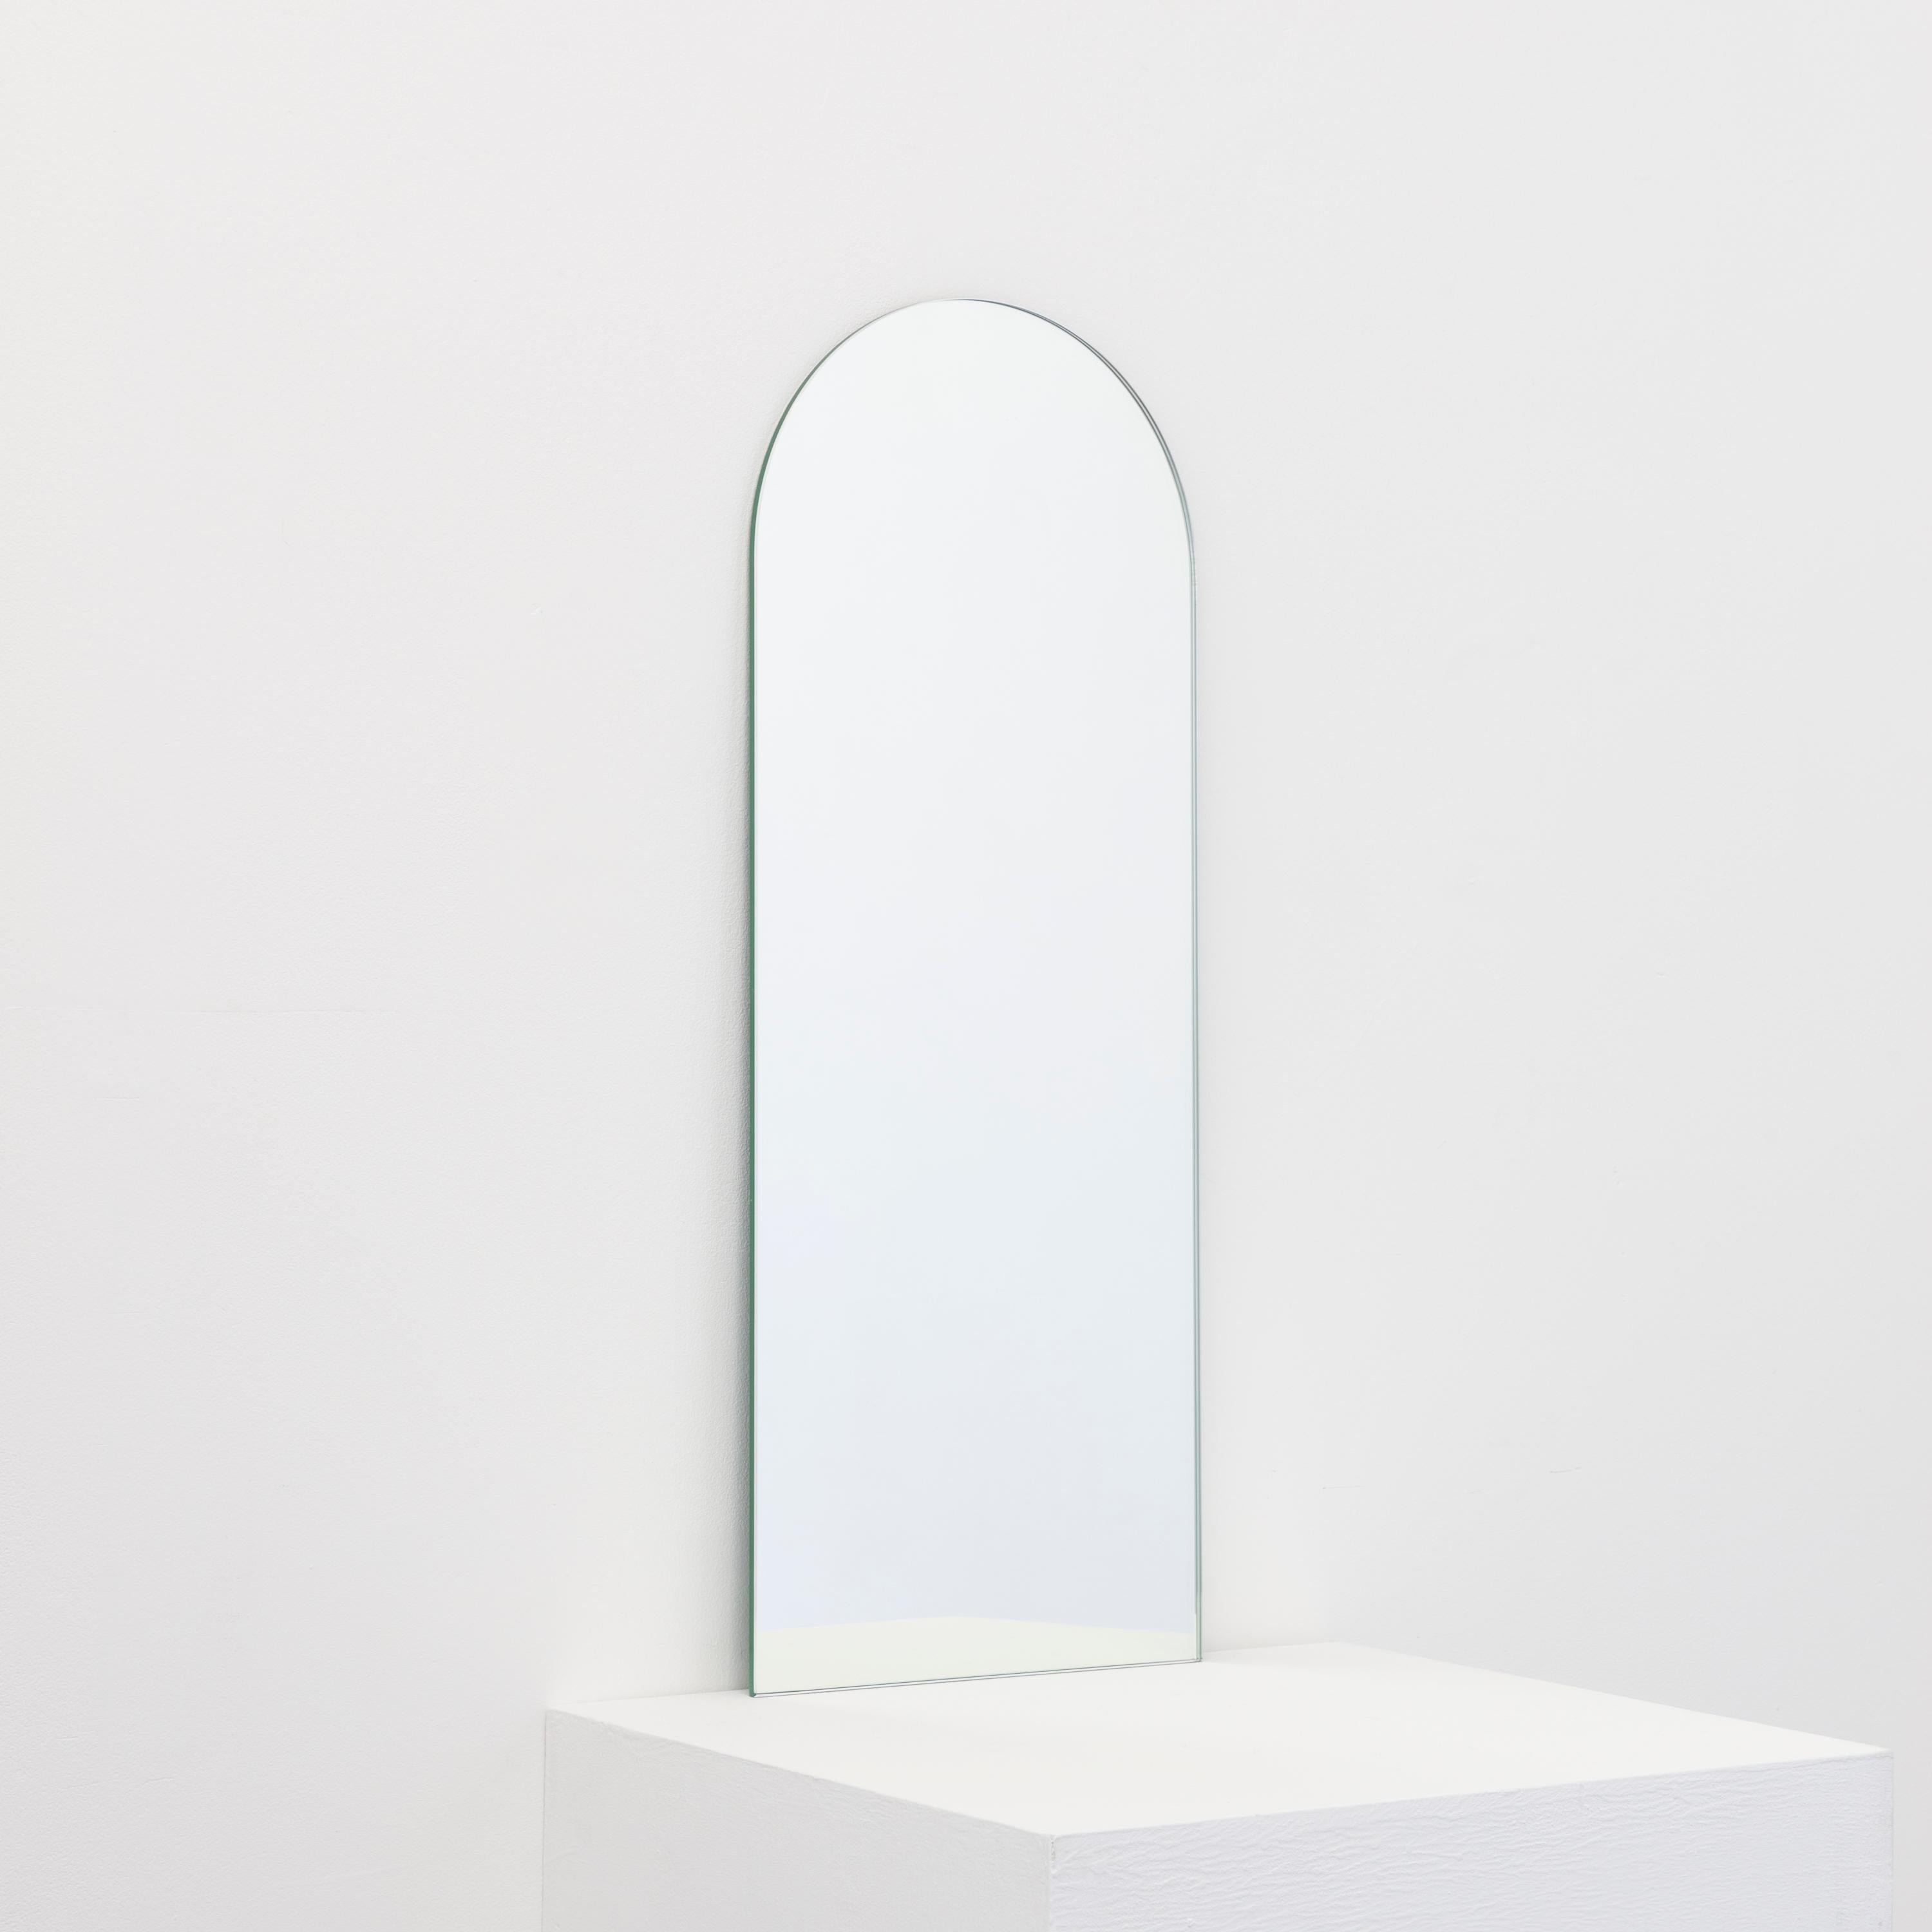 Minimalistischer, rechteckiger, rahmenloser Spiegel mit Schwebeeffekt. Hochwertiges Design, das dafür sorgt, dass der Spiegel perfekt parallel zur Wand steht. Entworfen und hergestellt in London, UK.

Ausgestattet mit professionellen Platten, die im